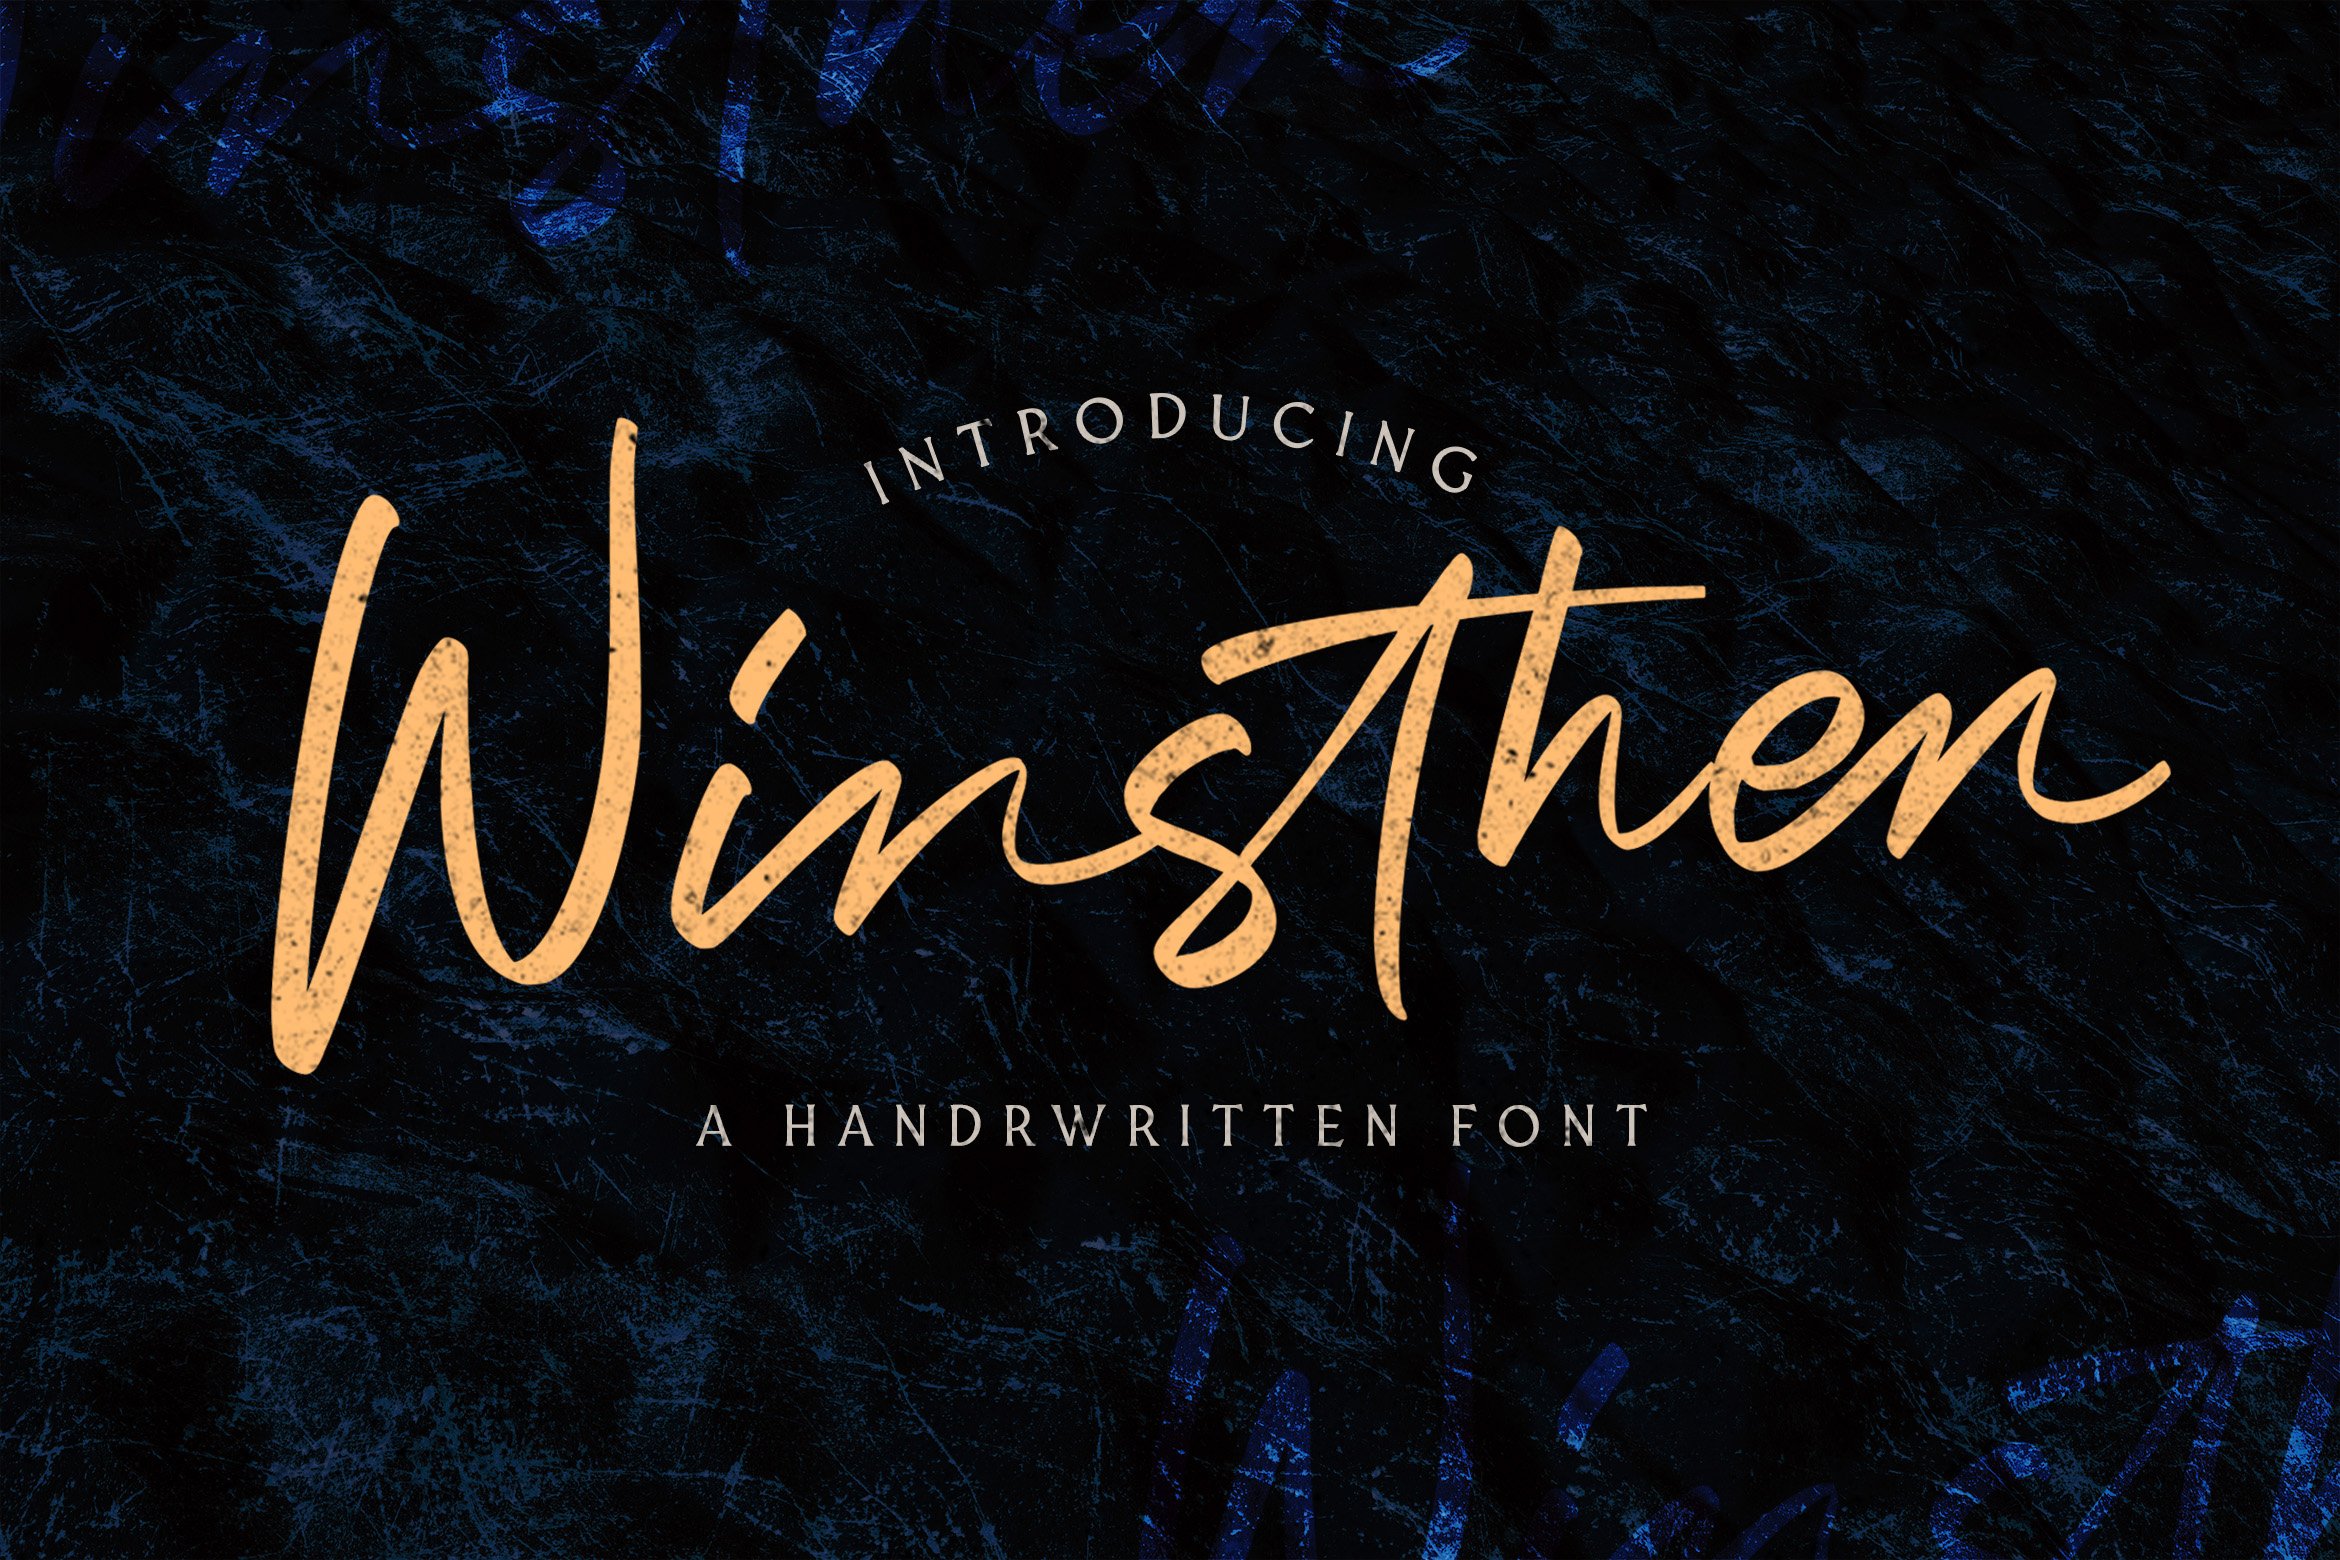 Winsthen - Handwritten Font cover image.